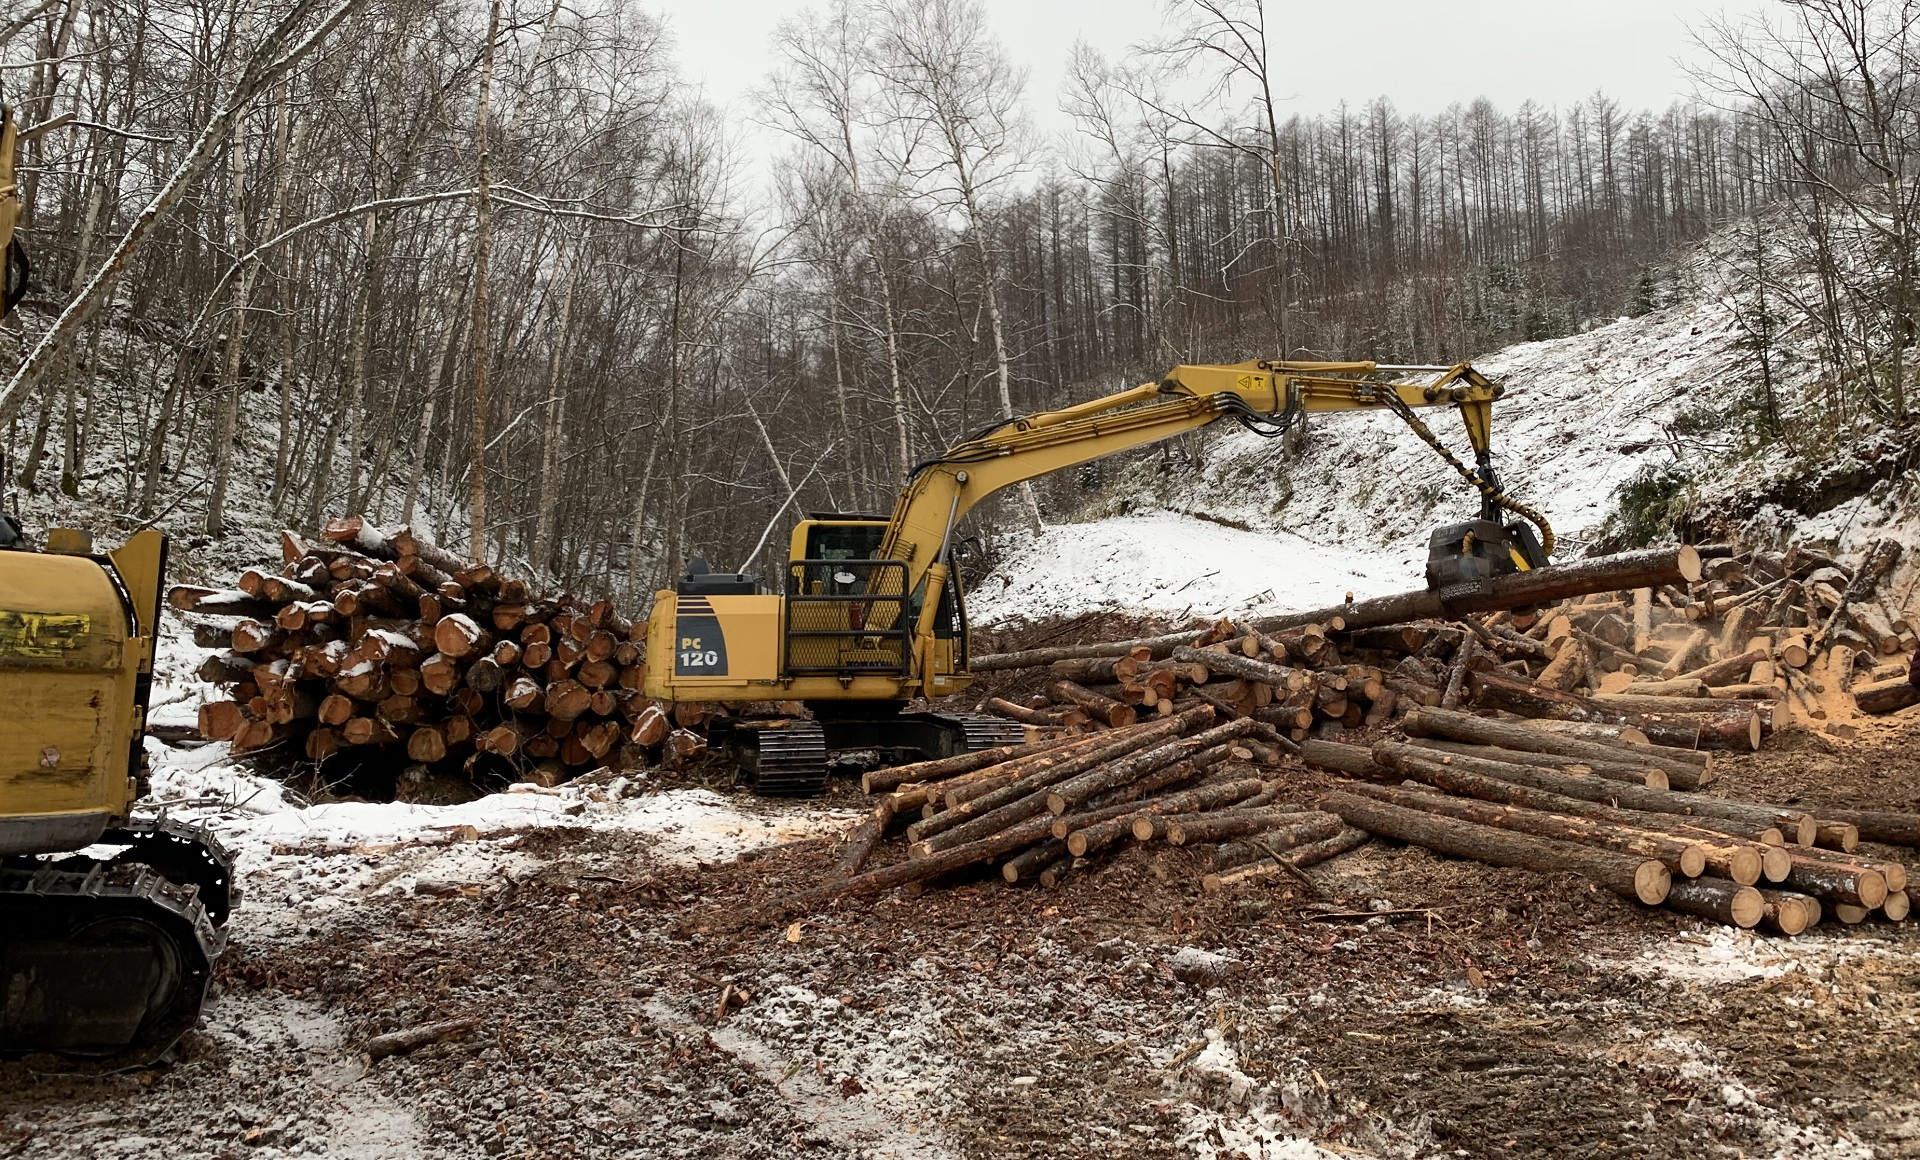 伐採現場には無駄がない資源の活かし方を要求されてます。